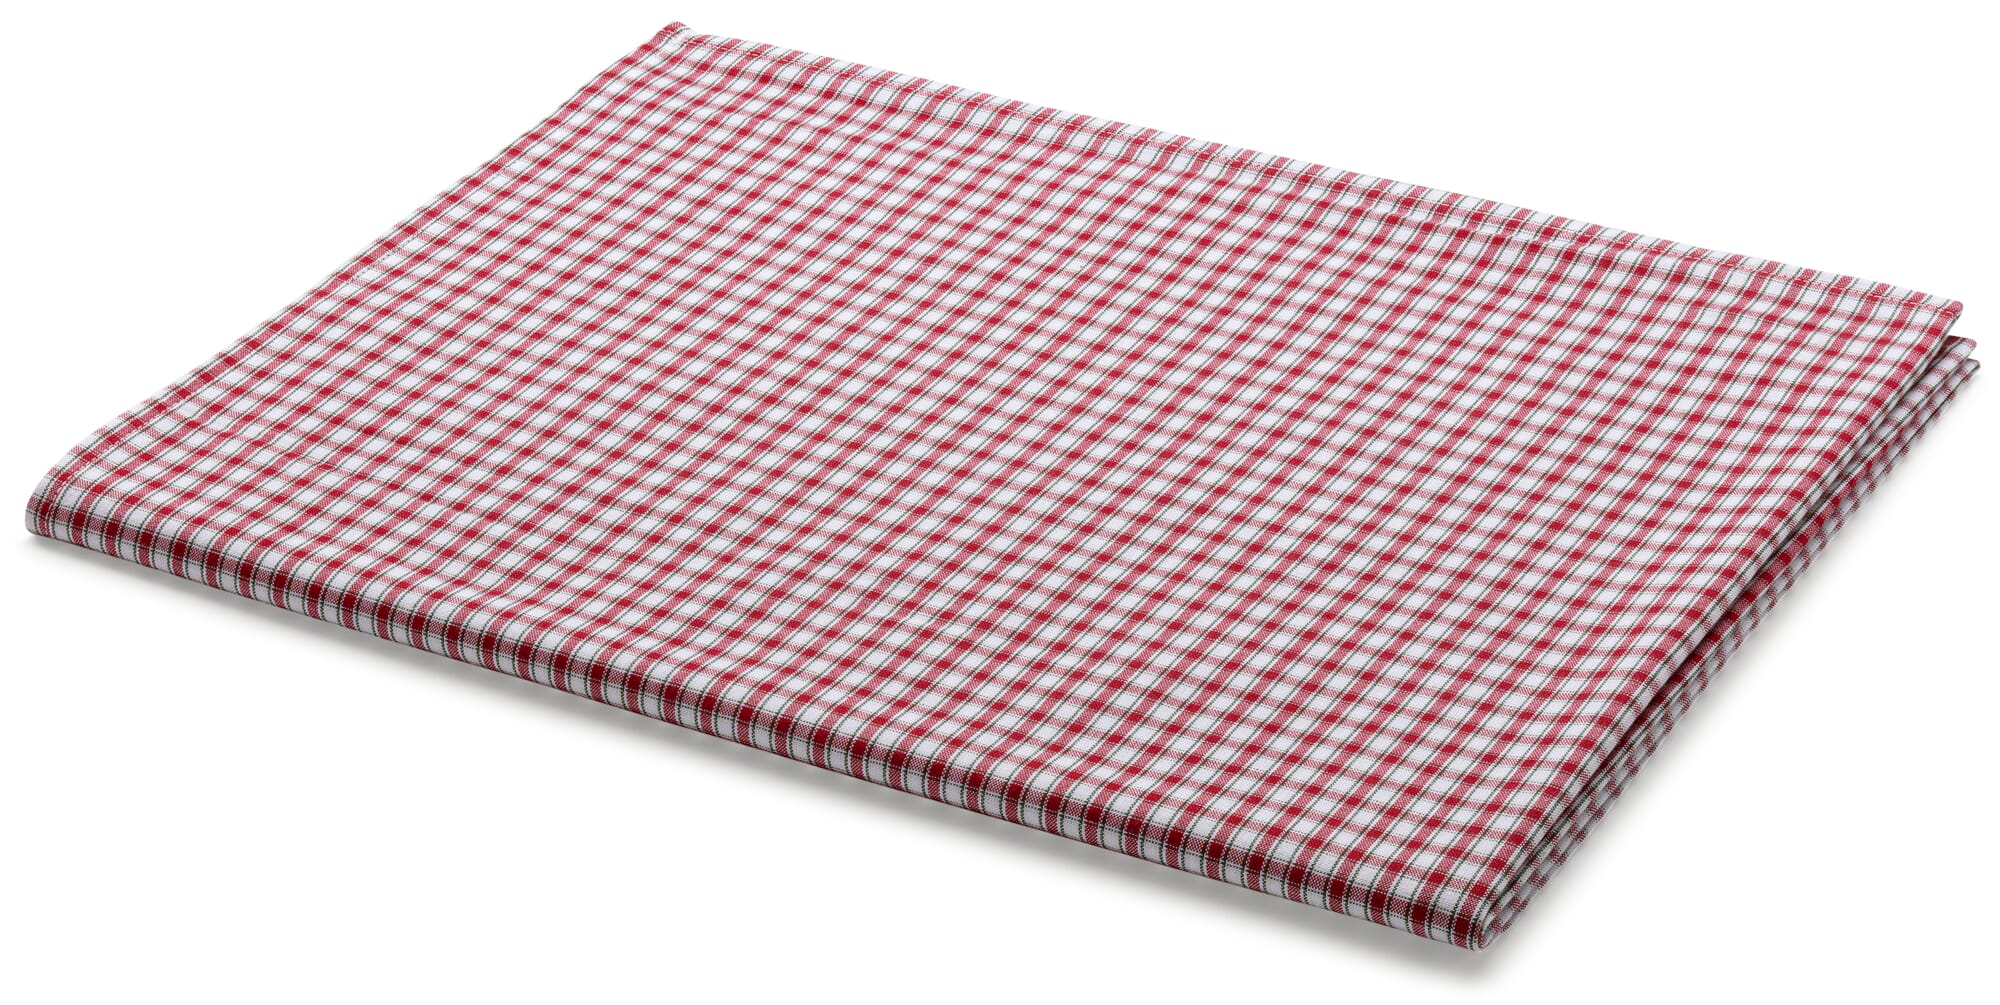 Tischdecke rot-weiß kariert, 135 | Manufactum × 135 cm